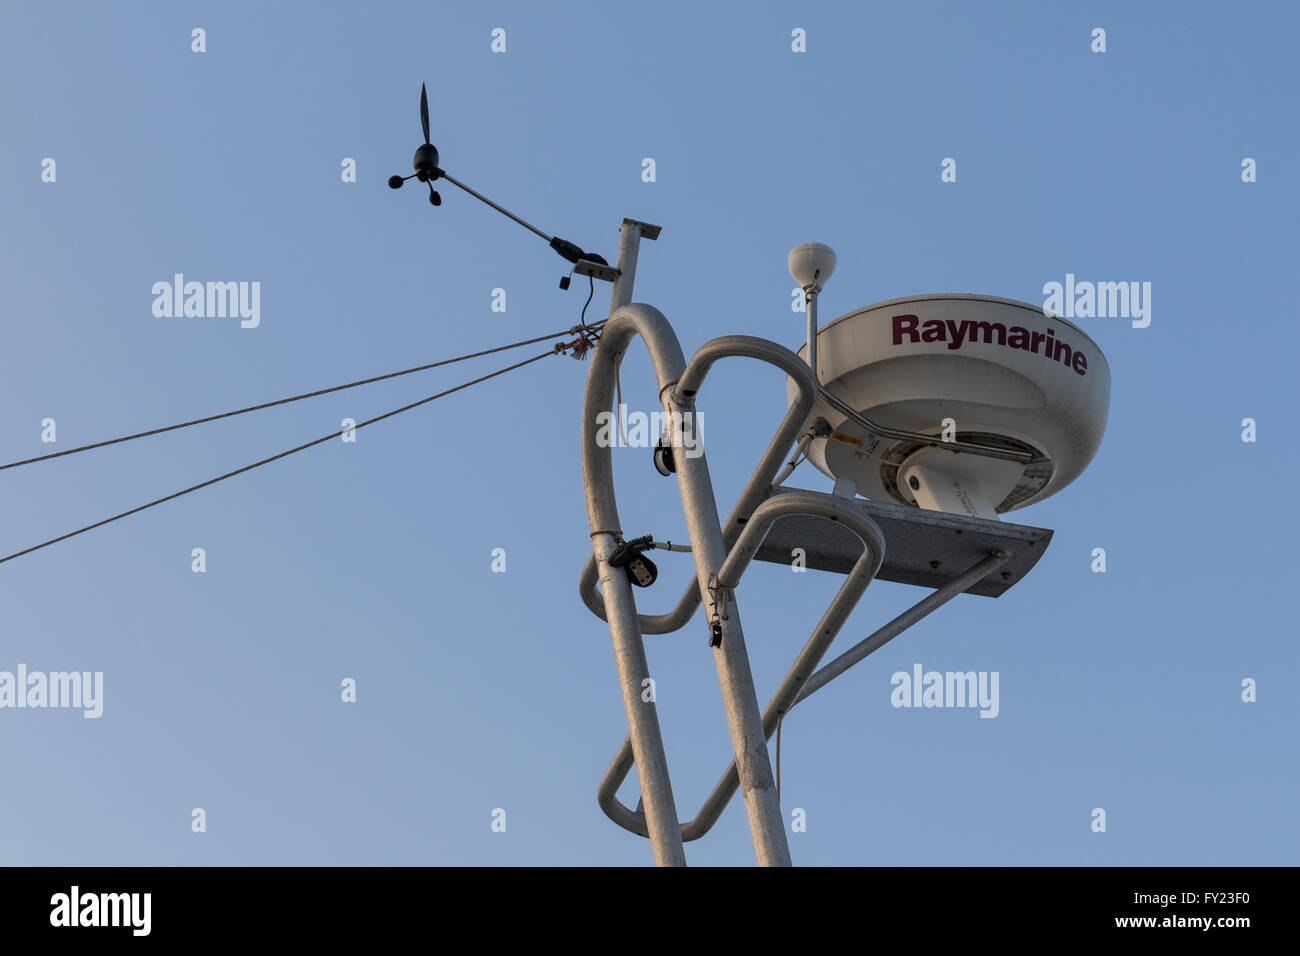 Raymarine marine radar on mast Stock Photo